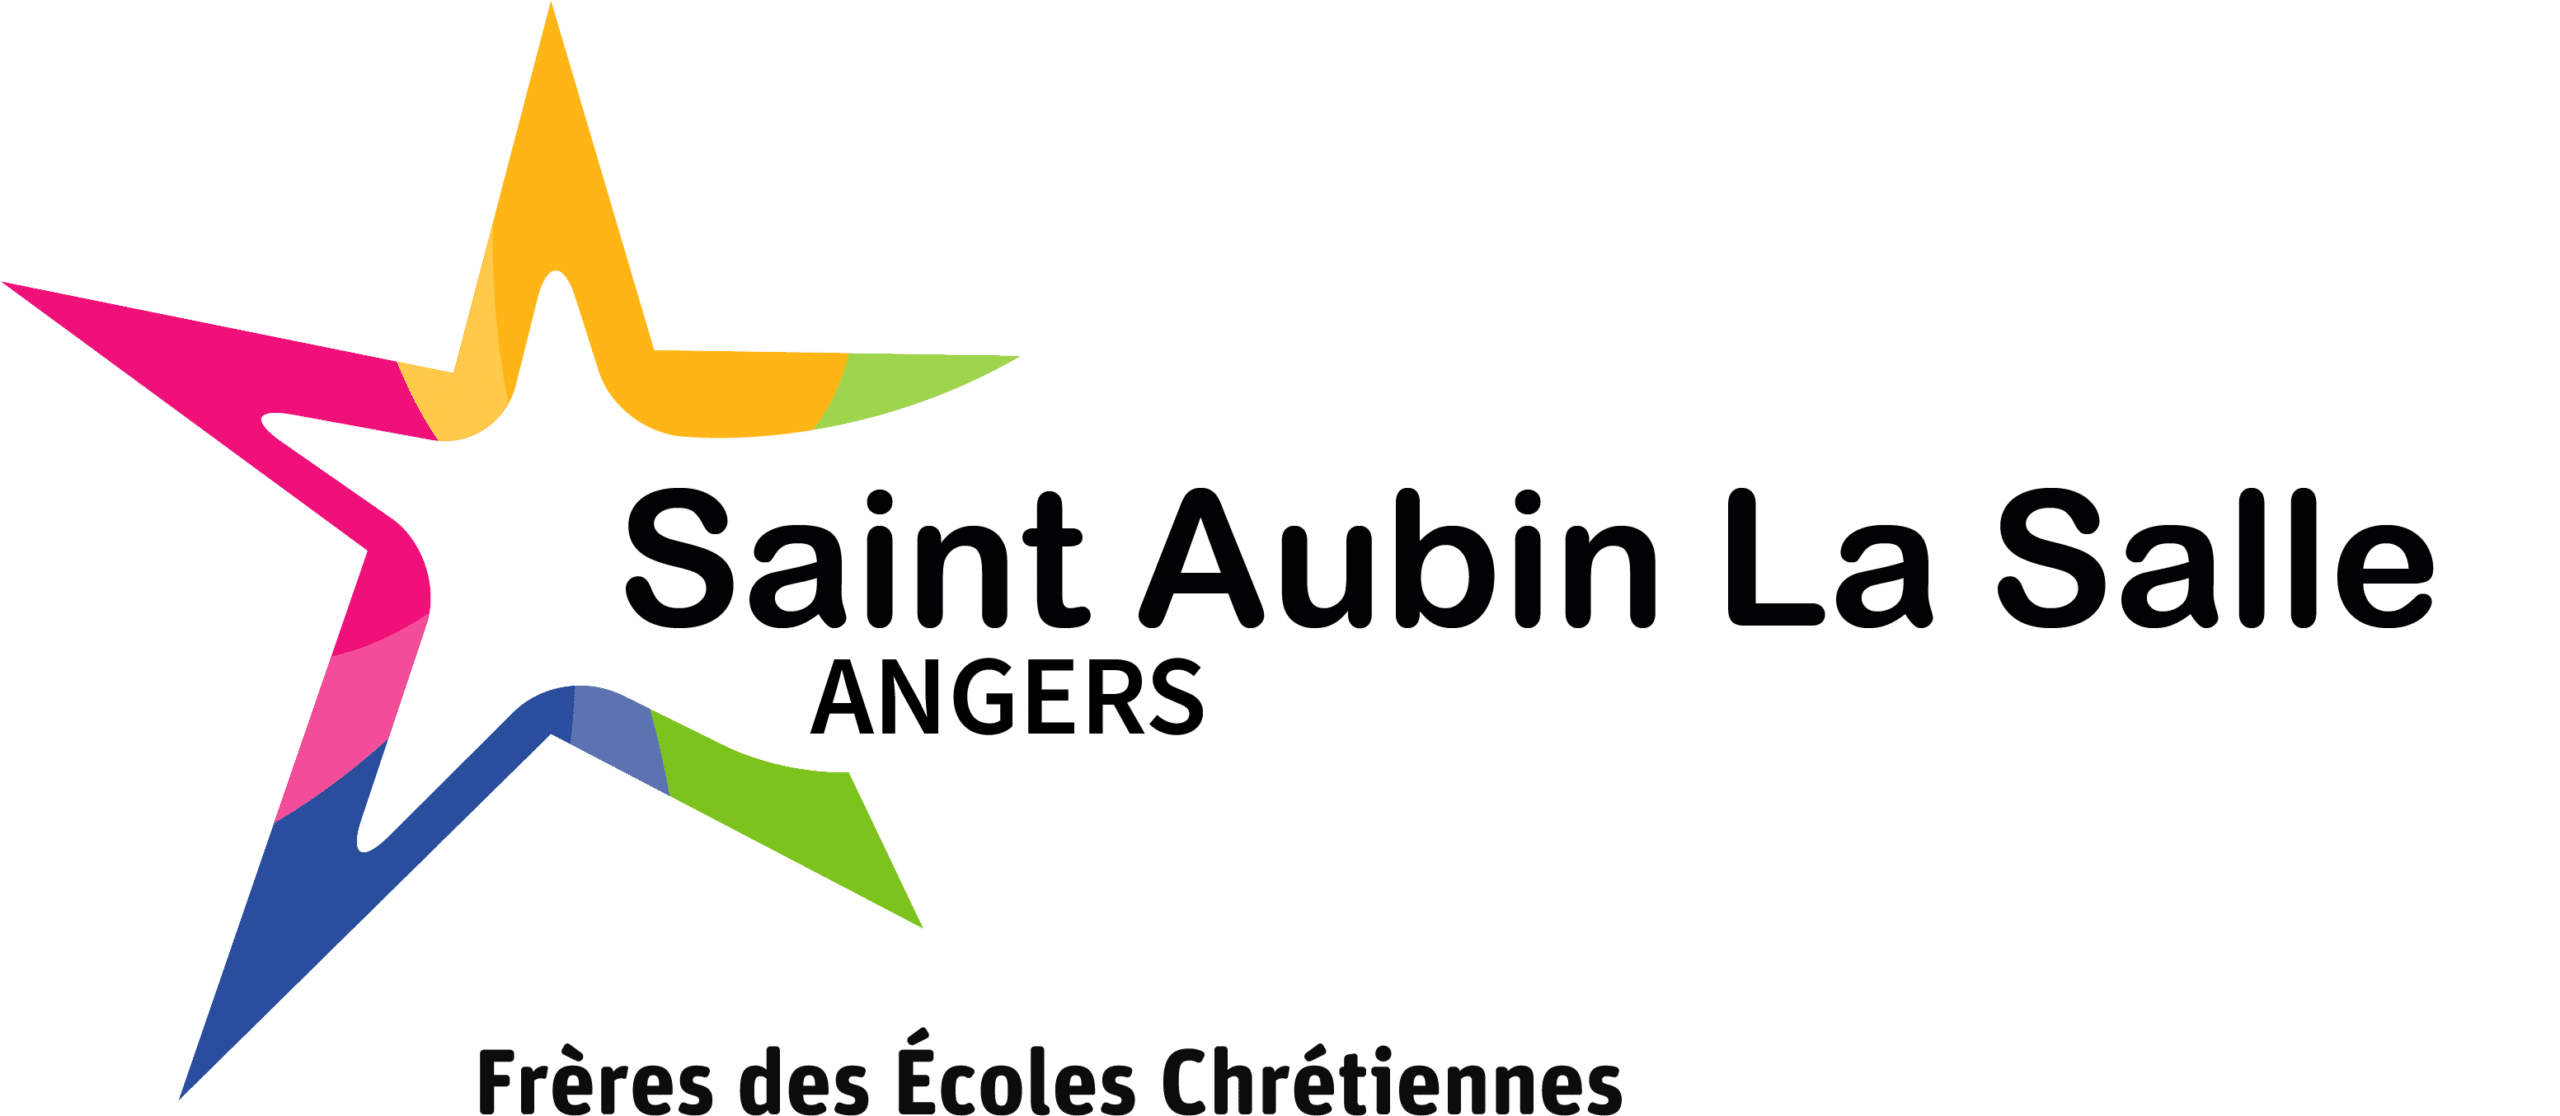 St Aubin La Salle